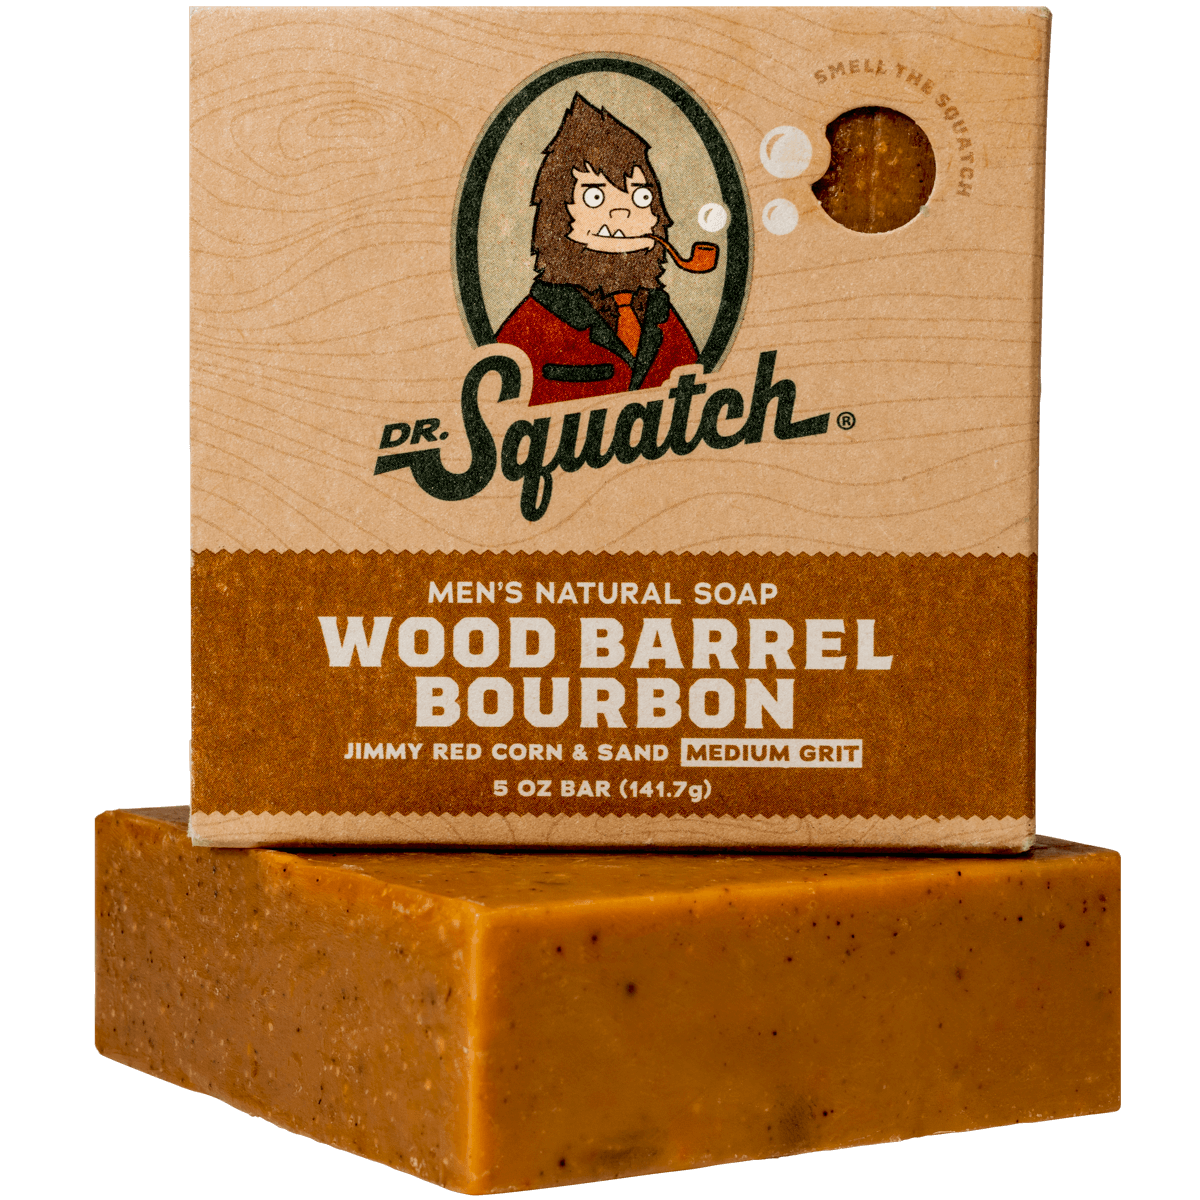 Dr. Squatch Natural Bar Soap, Wood Barrel Bourbon, 5 oz